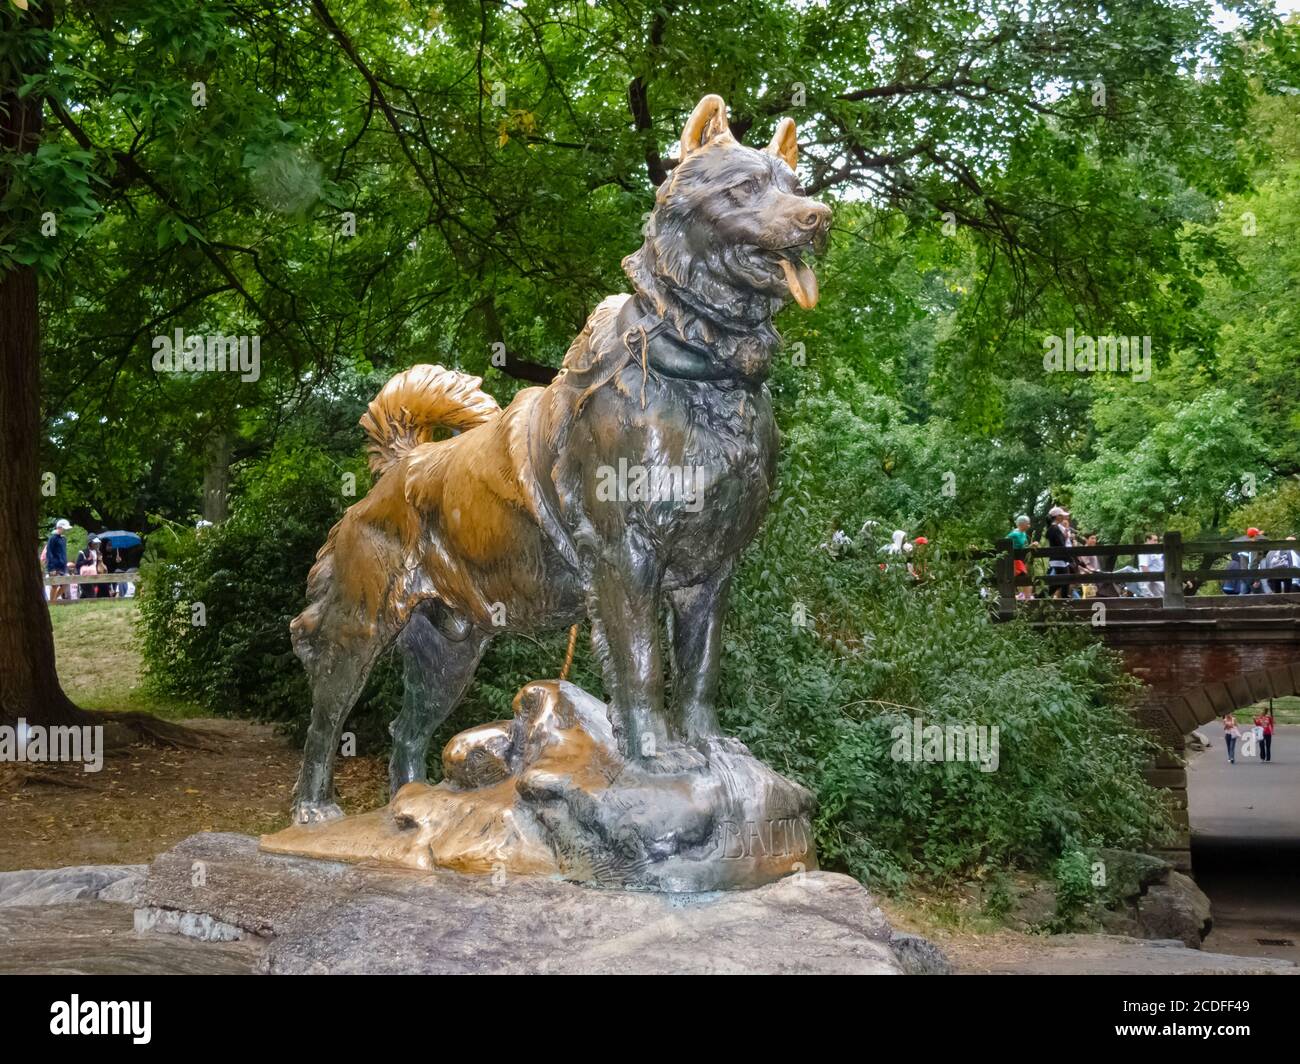 Statue en bronze de Balto, chien de traîneau, de Frederick Roth, Central Park, Manhattan, New York City, New York, États-Unis Banque D'Images